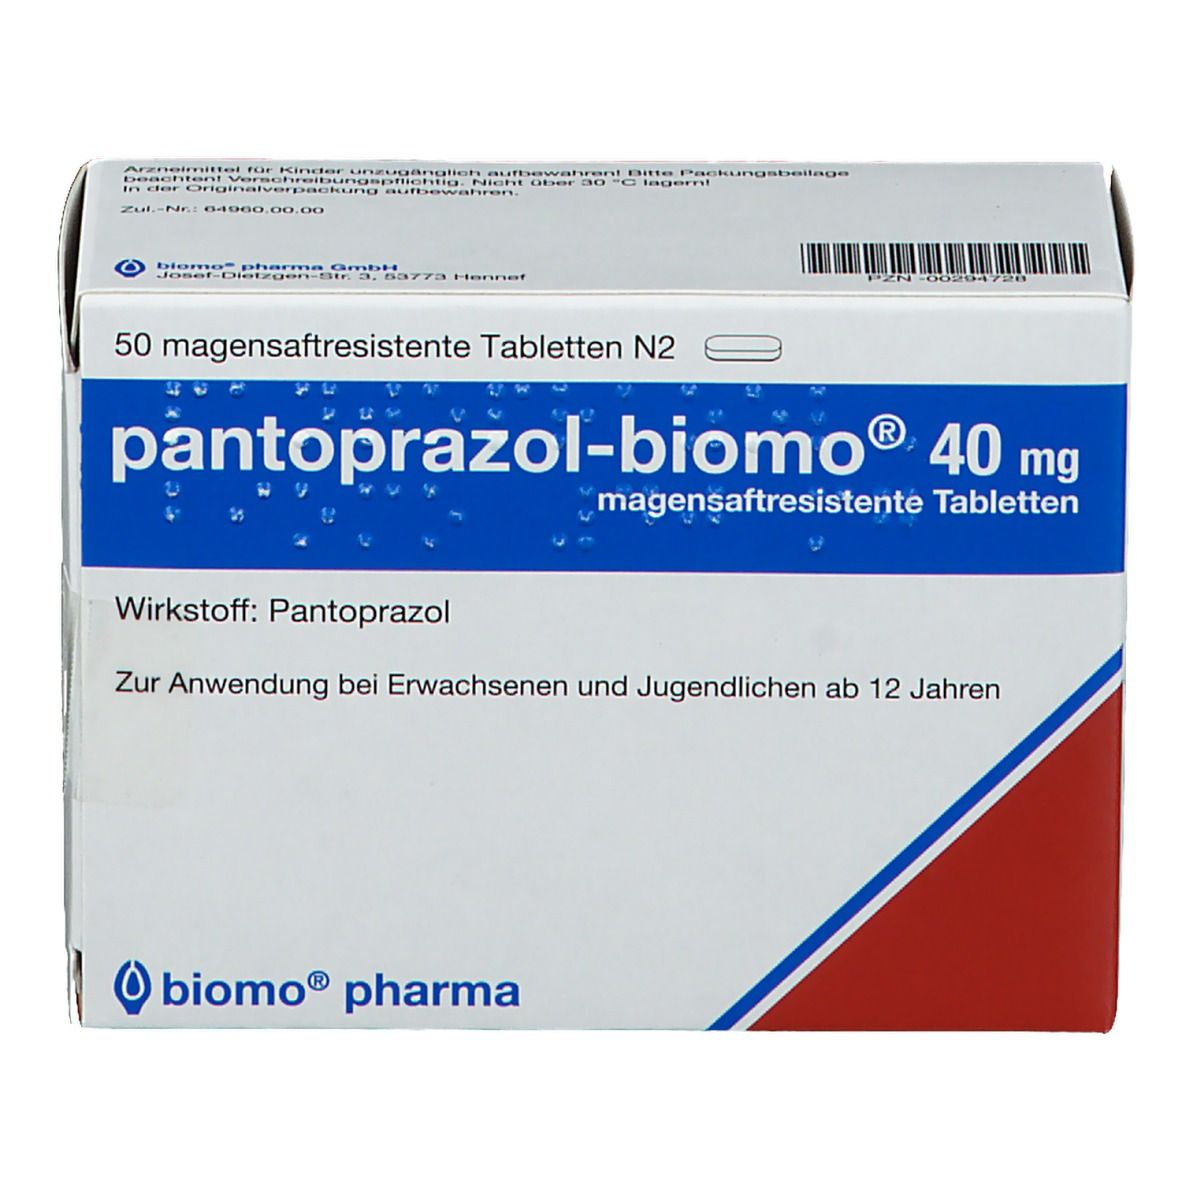 pantoprazol-biomo® 40 mg